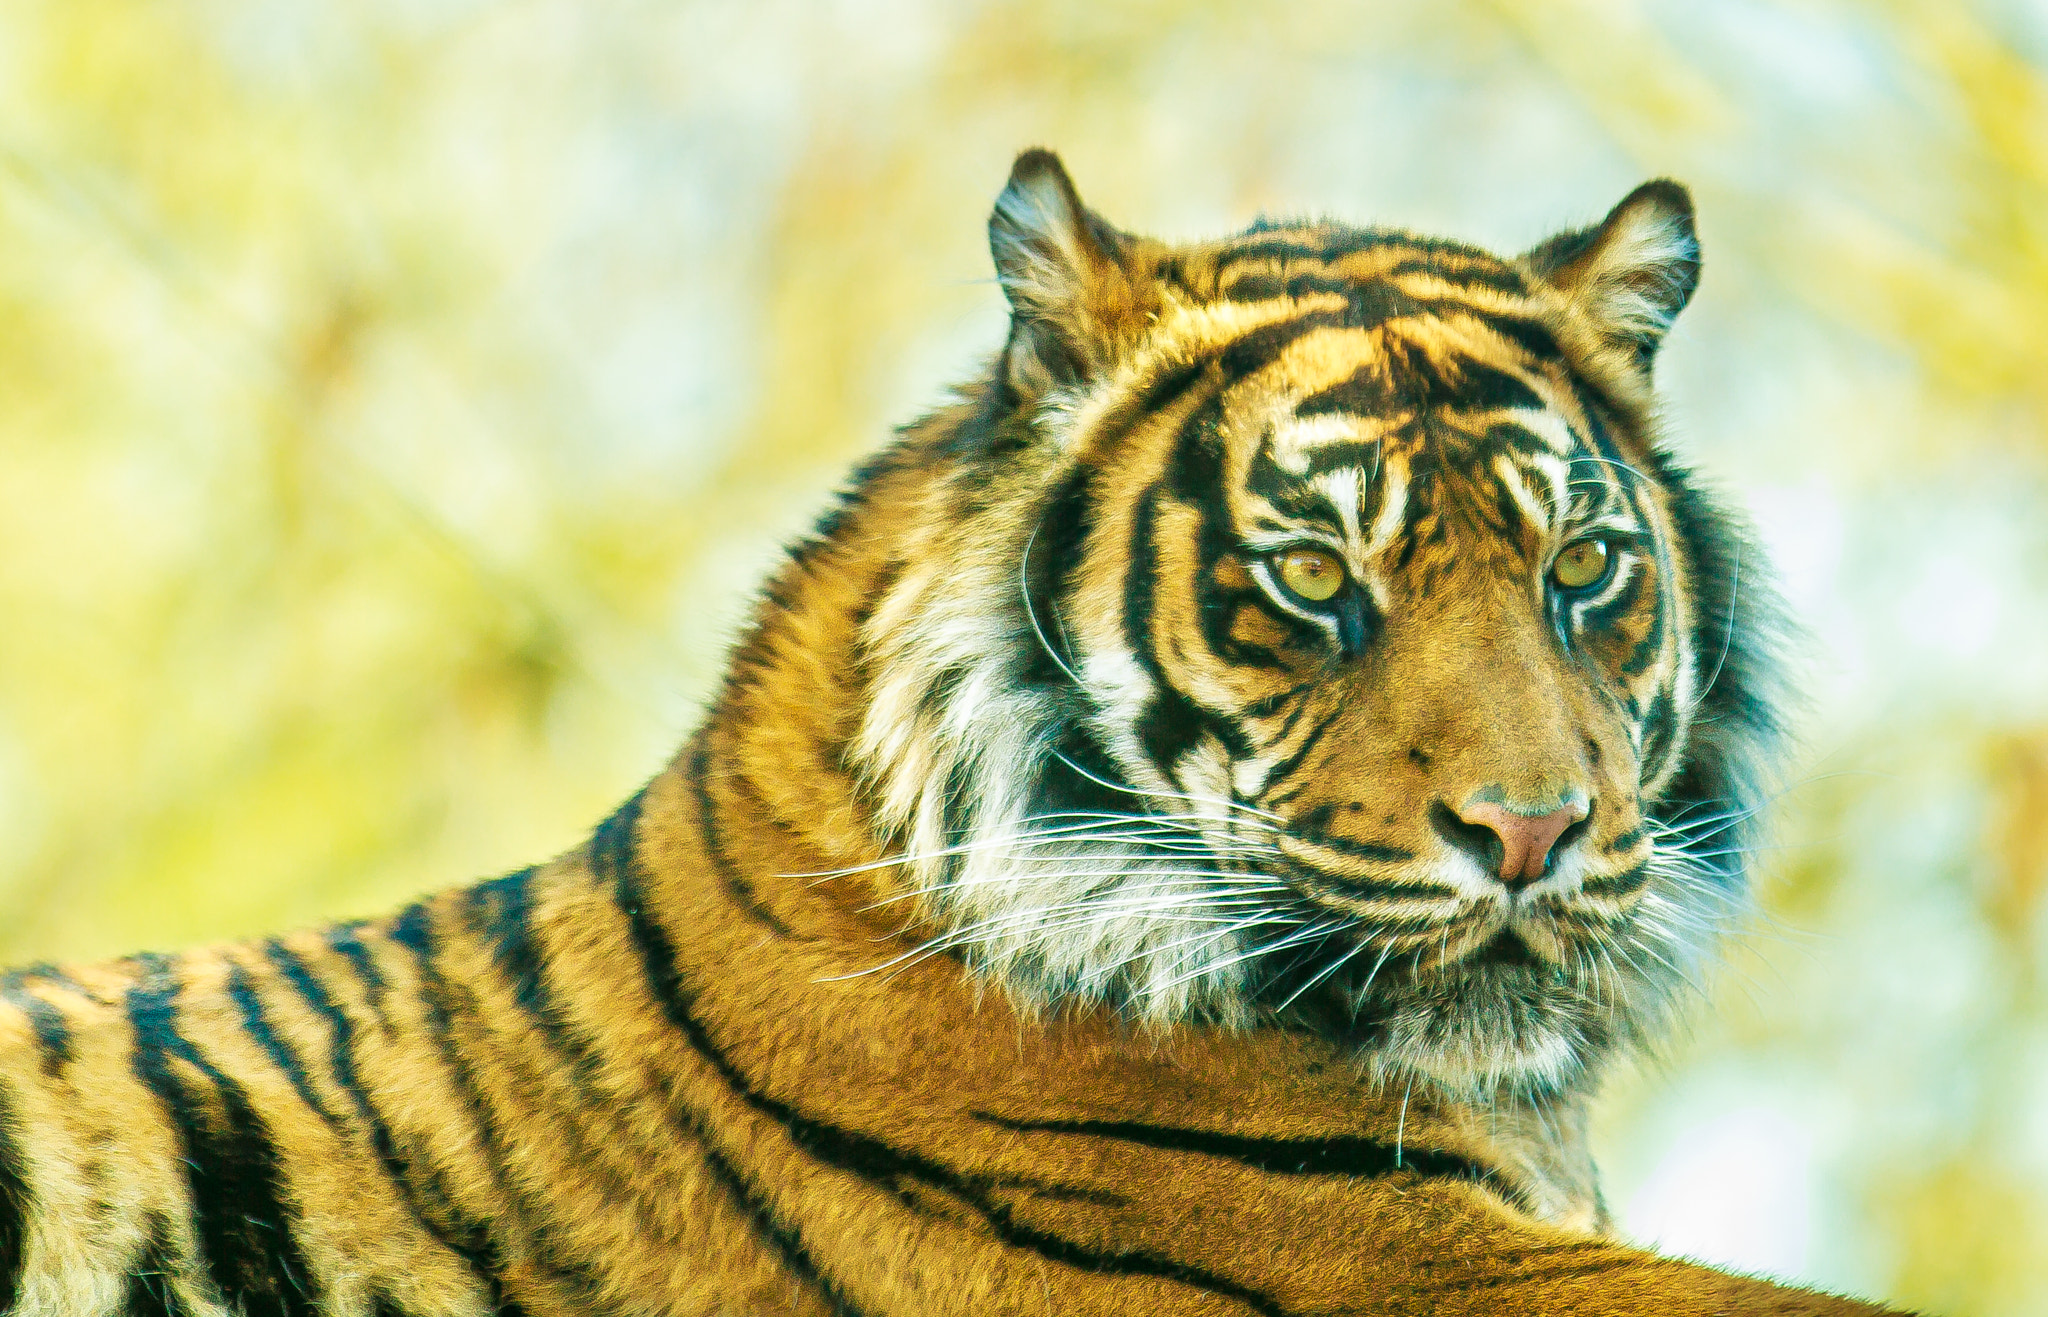 Canon EOS 7D sample photo. Critically endangered sumatran tiger photography